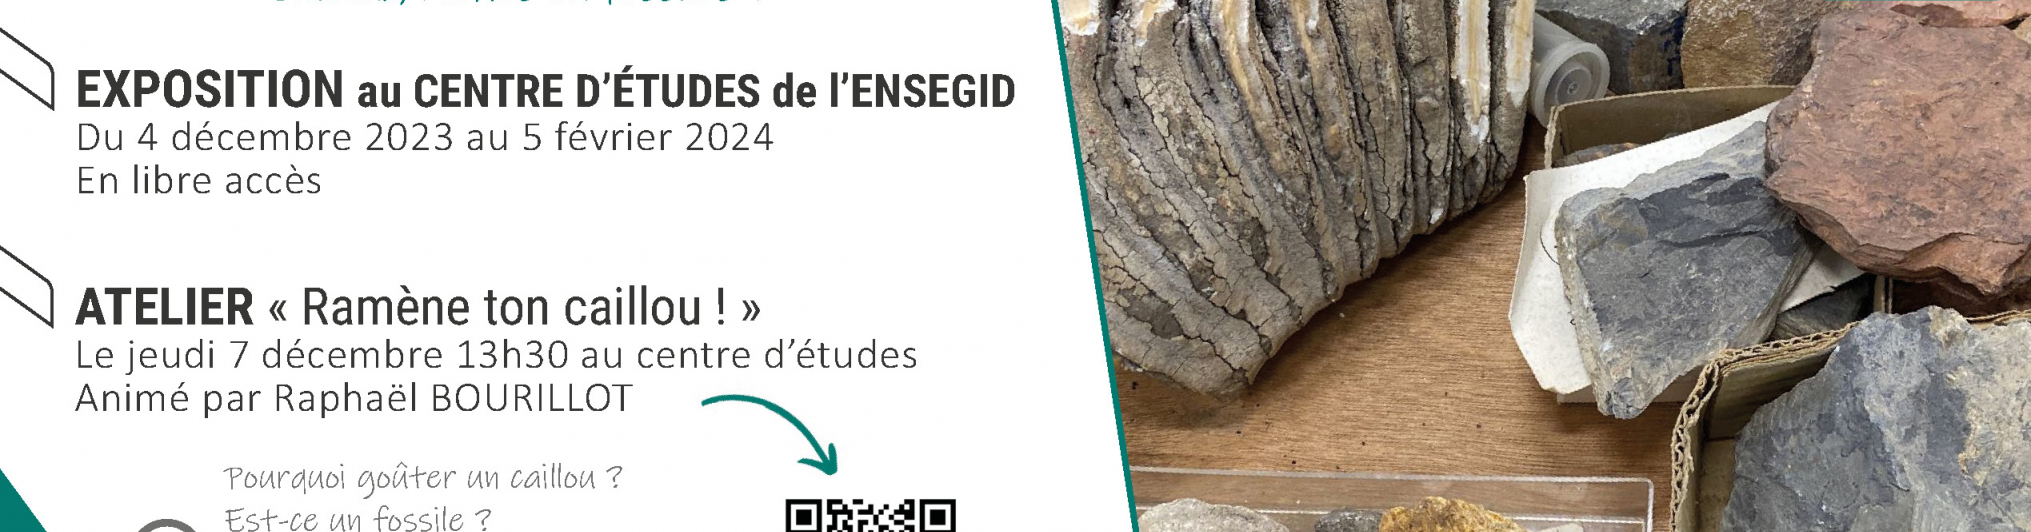 Les collections cachées de l'ENSEGID : cailloux, roches ou fossiles ?